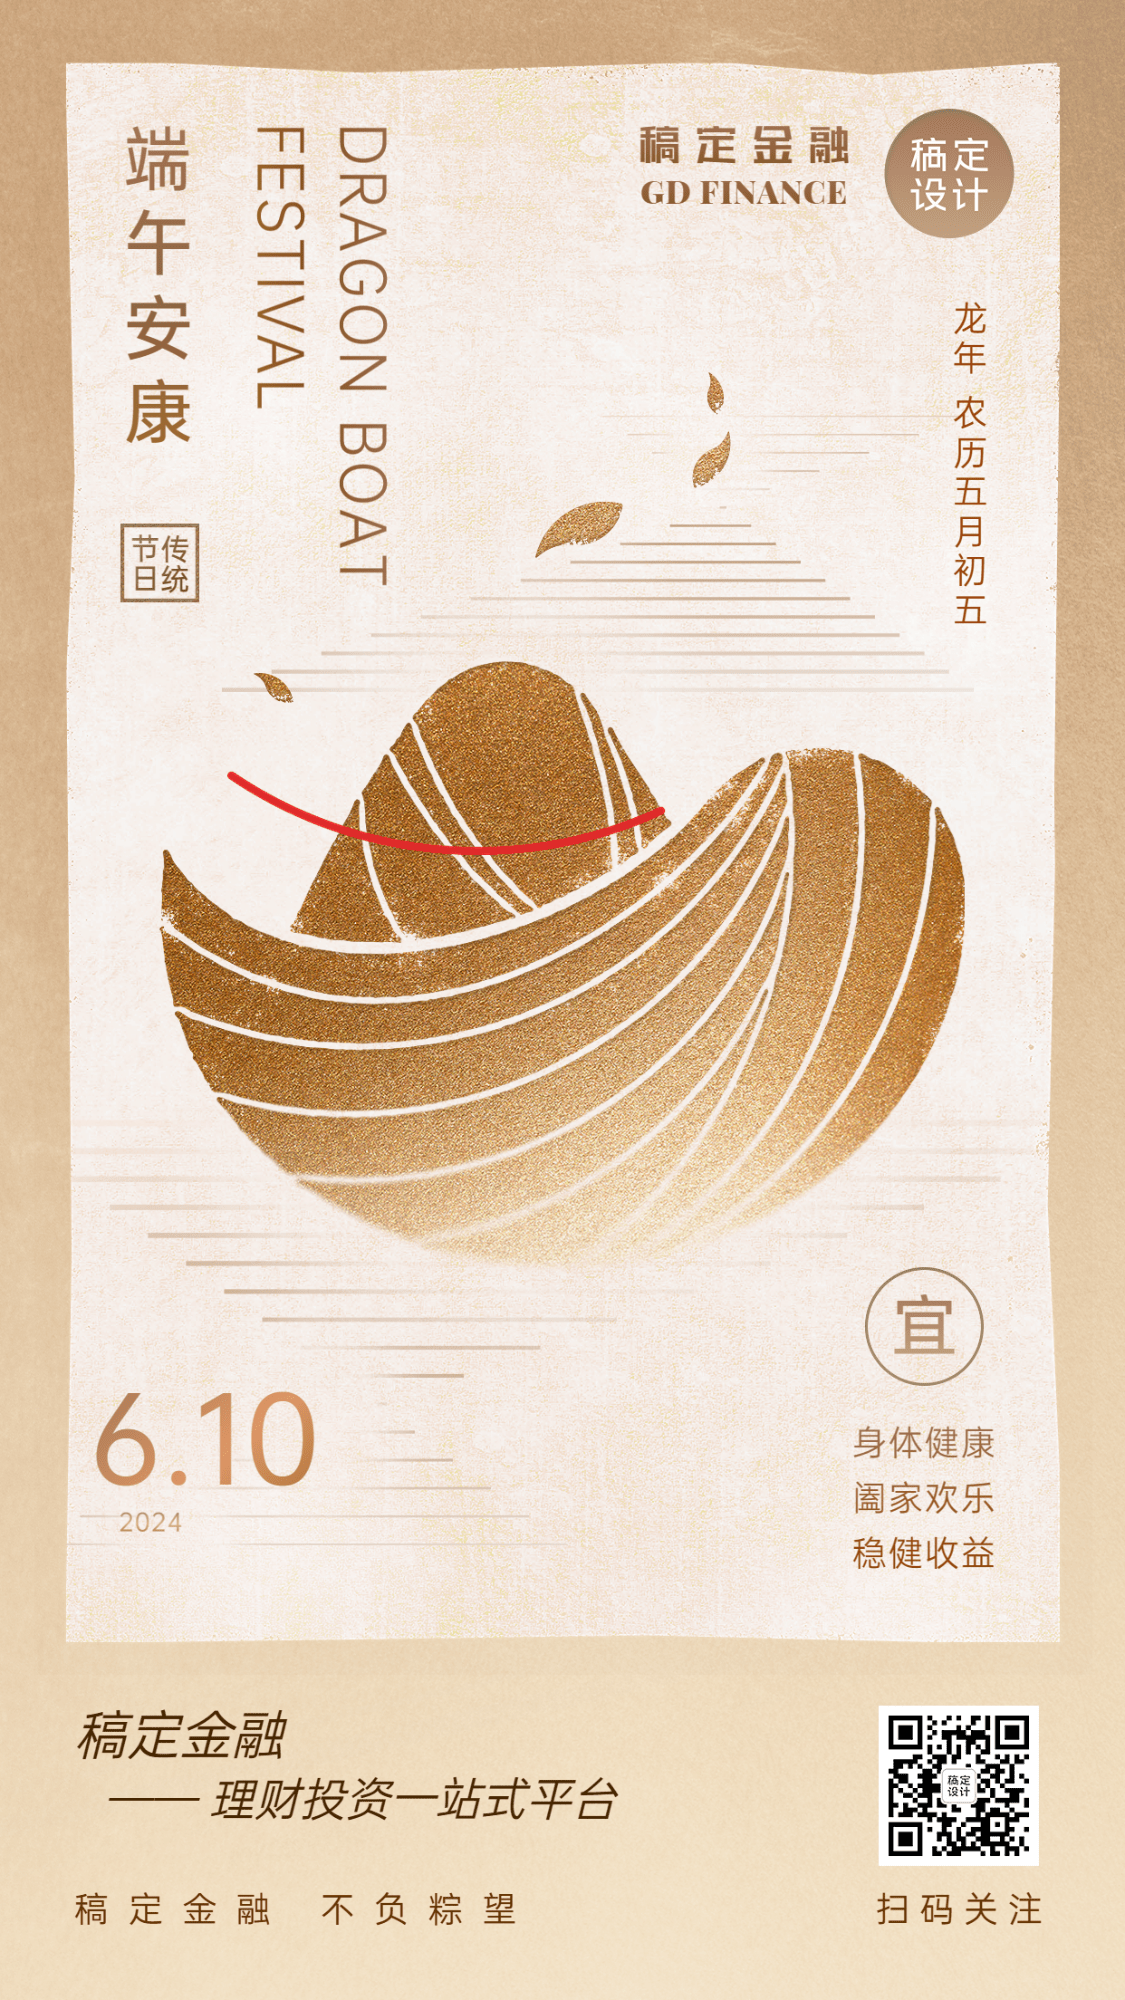 端午节金融保险节日祝福创意中国风手机海报预览效果